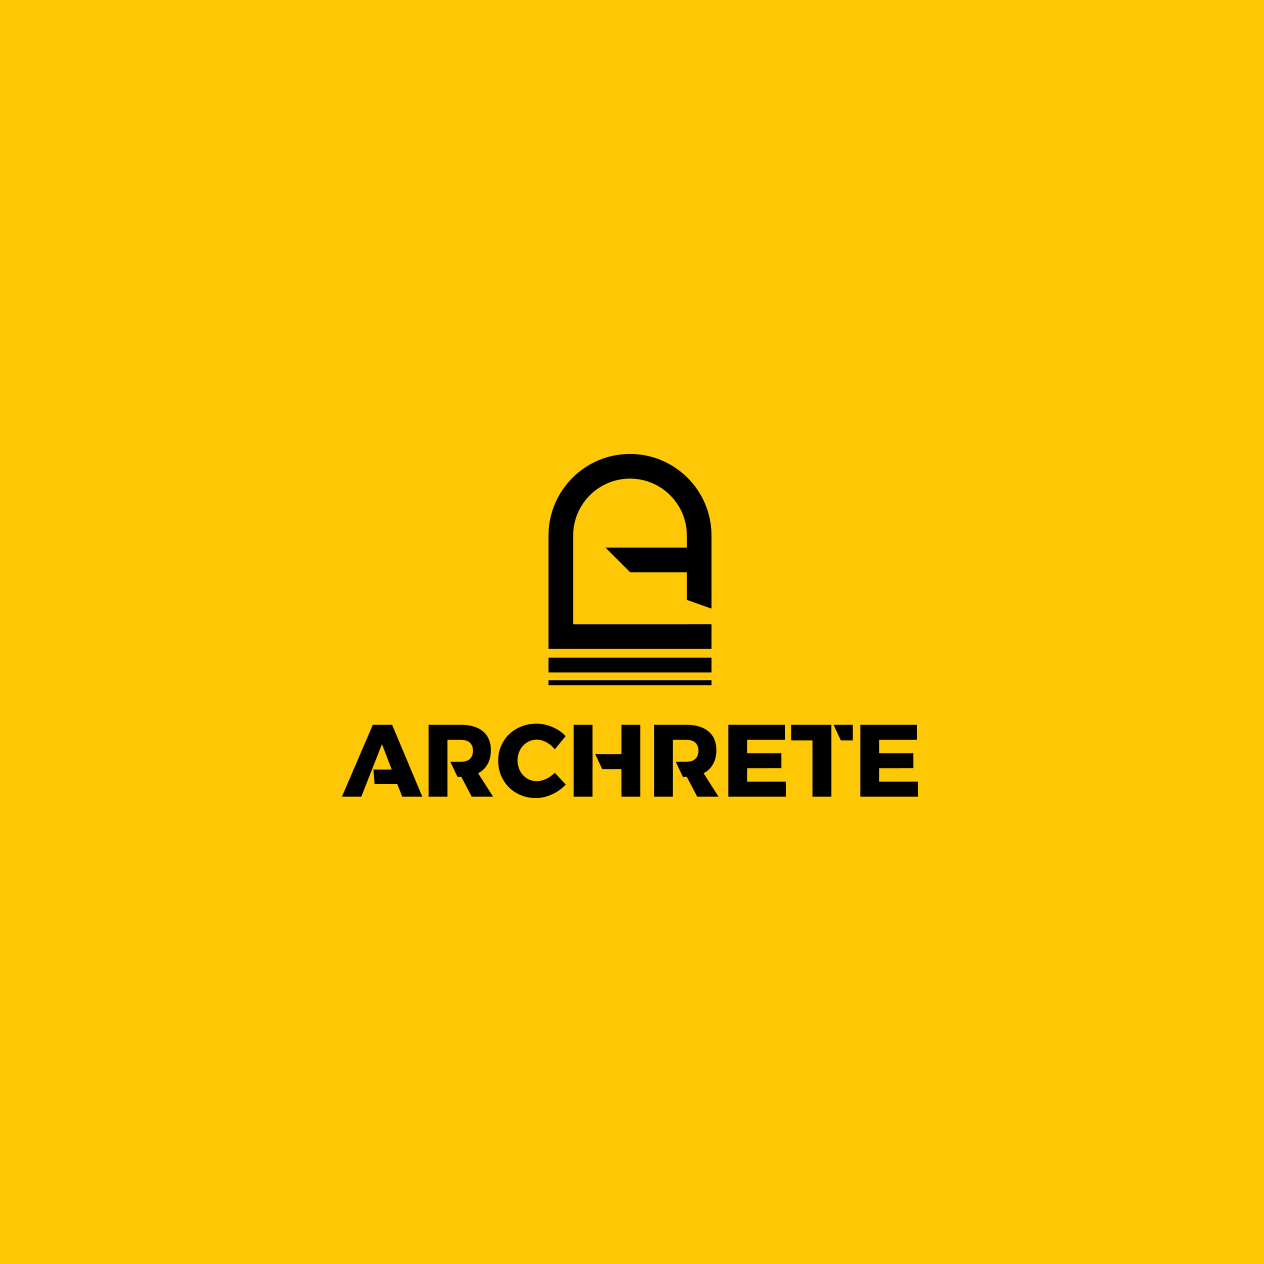 Archrete Engineering Designs